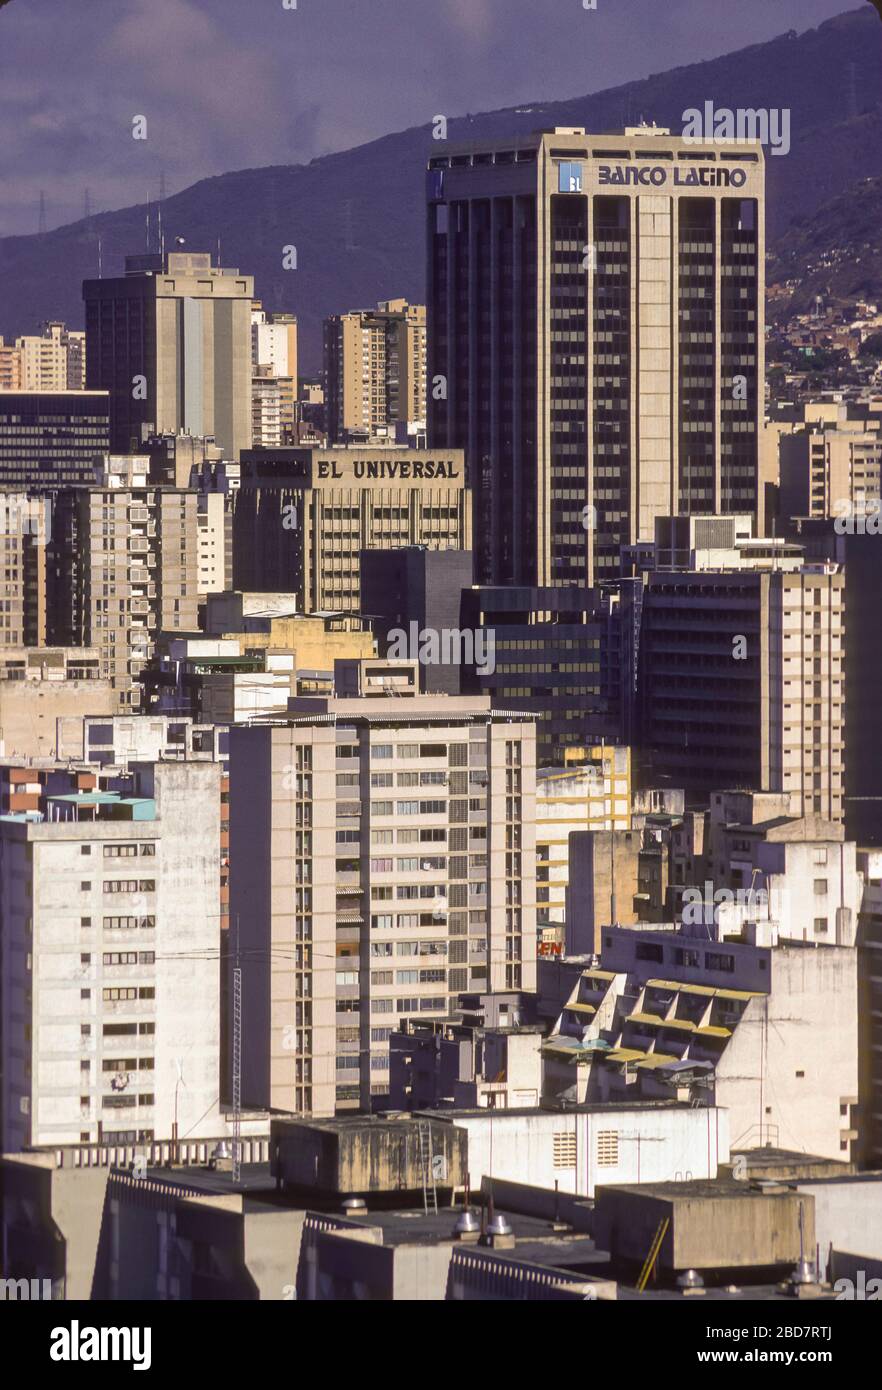 CARACAS, VENEZUELA, MÄRZ 1989 - hohe Gebäude in der Stadt Caracas. Gebäude der Banco Latino und El Universal. Stockfoto